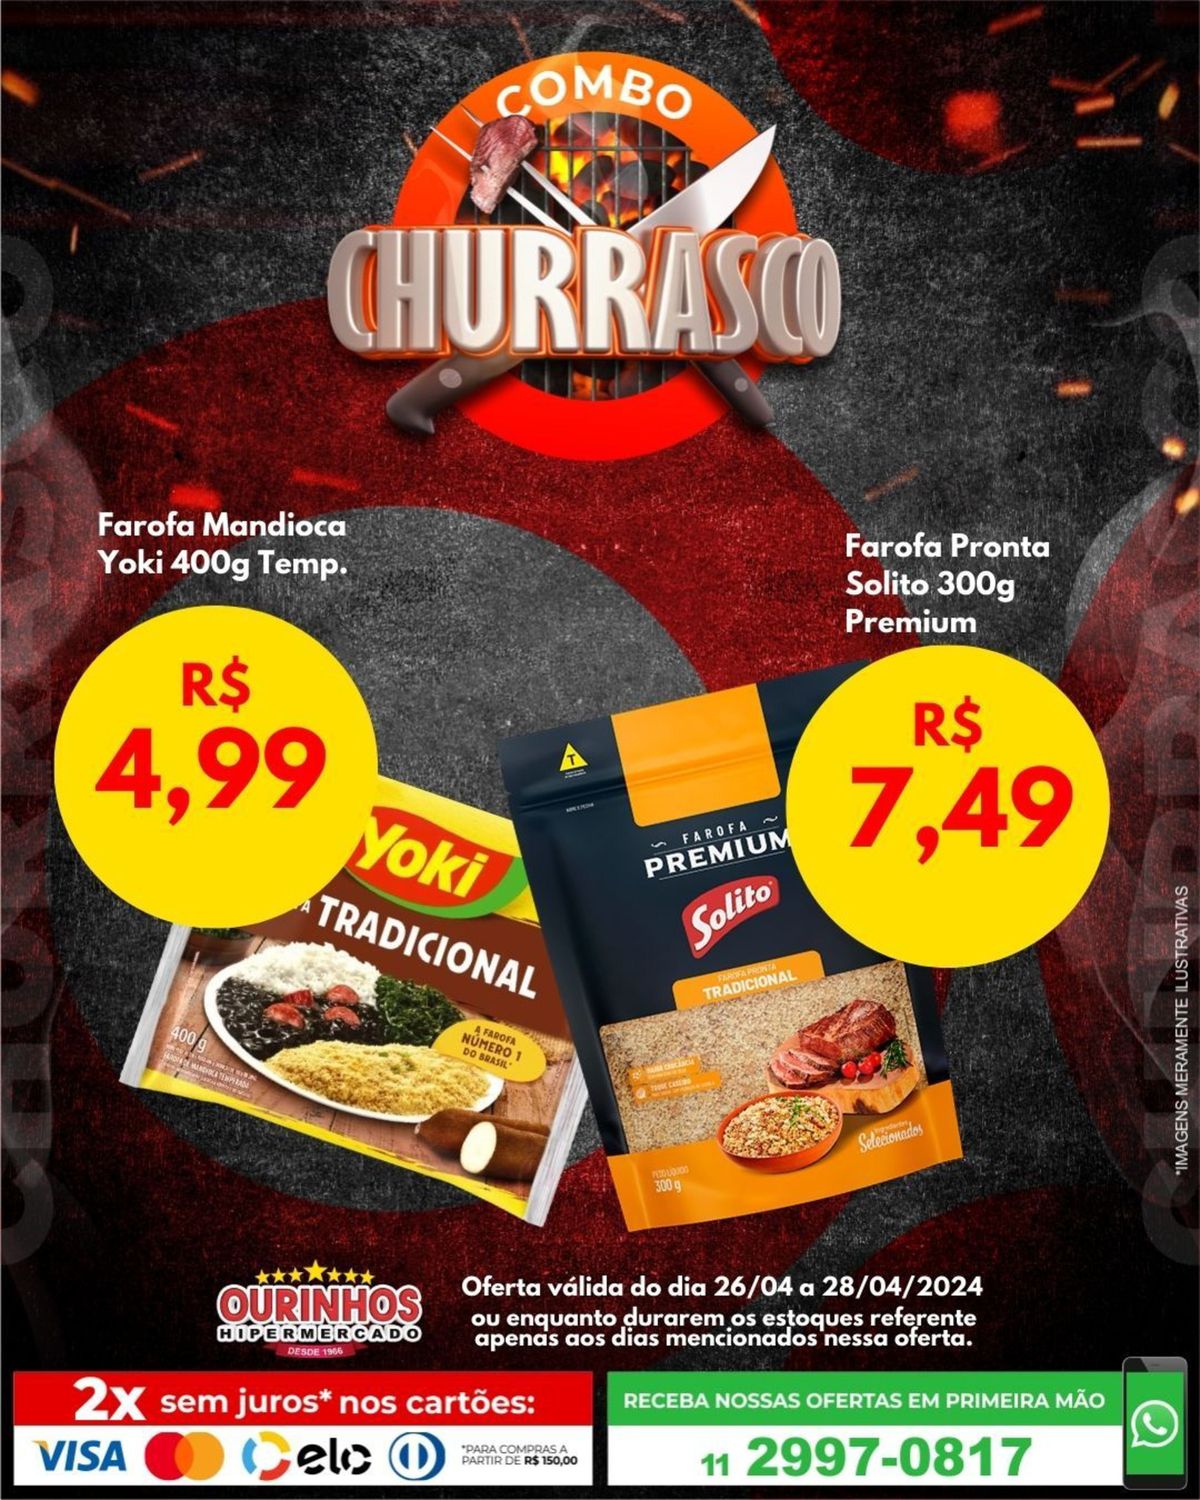 Promoções de produtos alimentícios e utensílios de cozinha, Churrasco Ourinhos Hipermercado, 28-04-